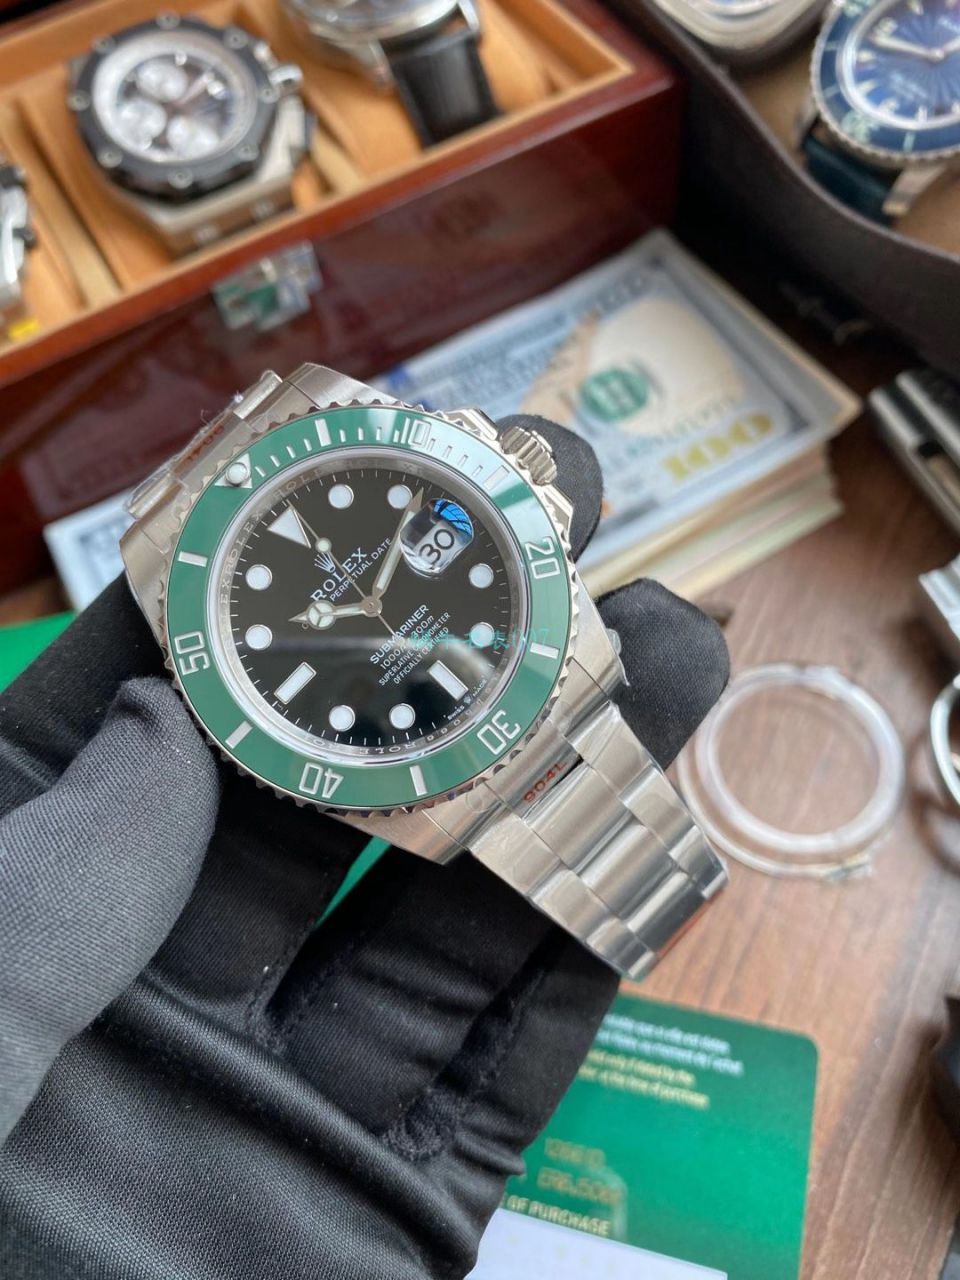 视频评测EW厂劳力士专柜新款绿水鬼1比1超A高仿手表41毫米m126610lv-0002腕表 